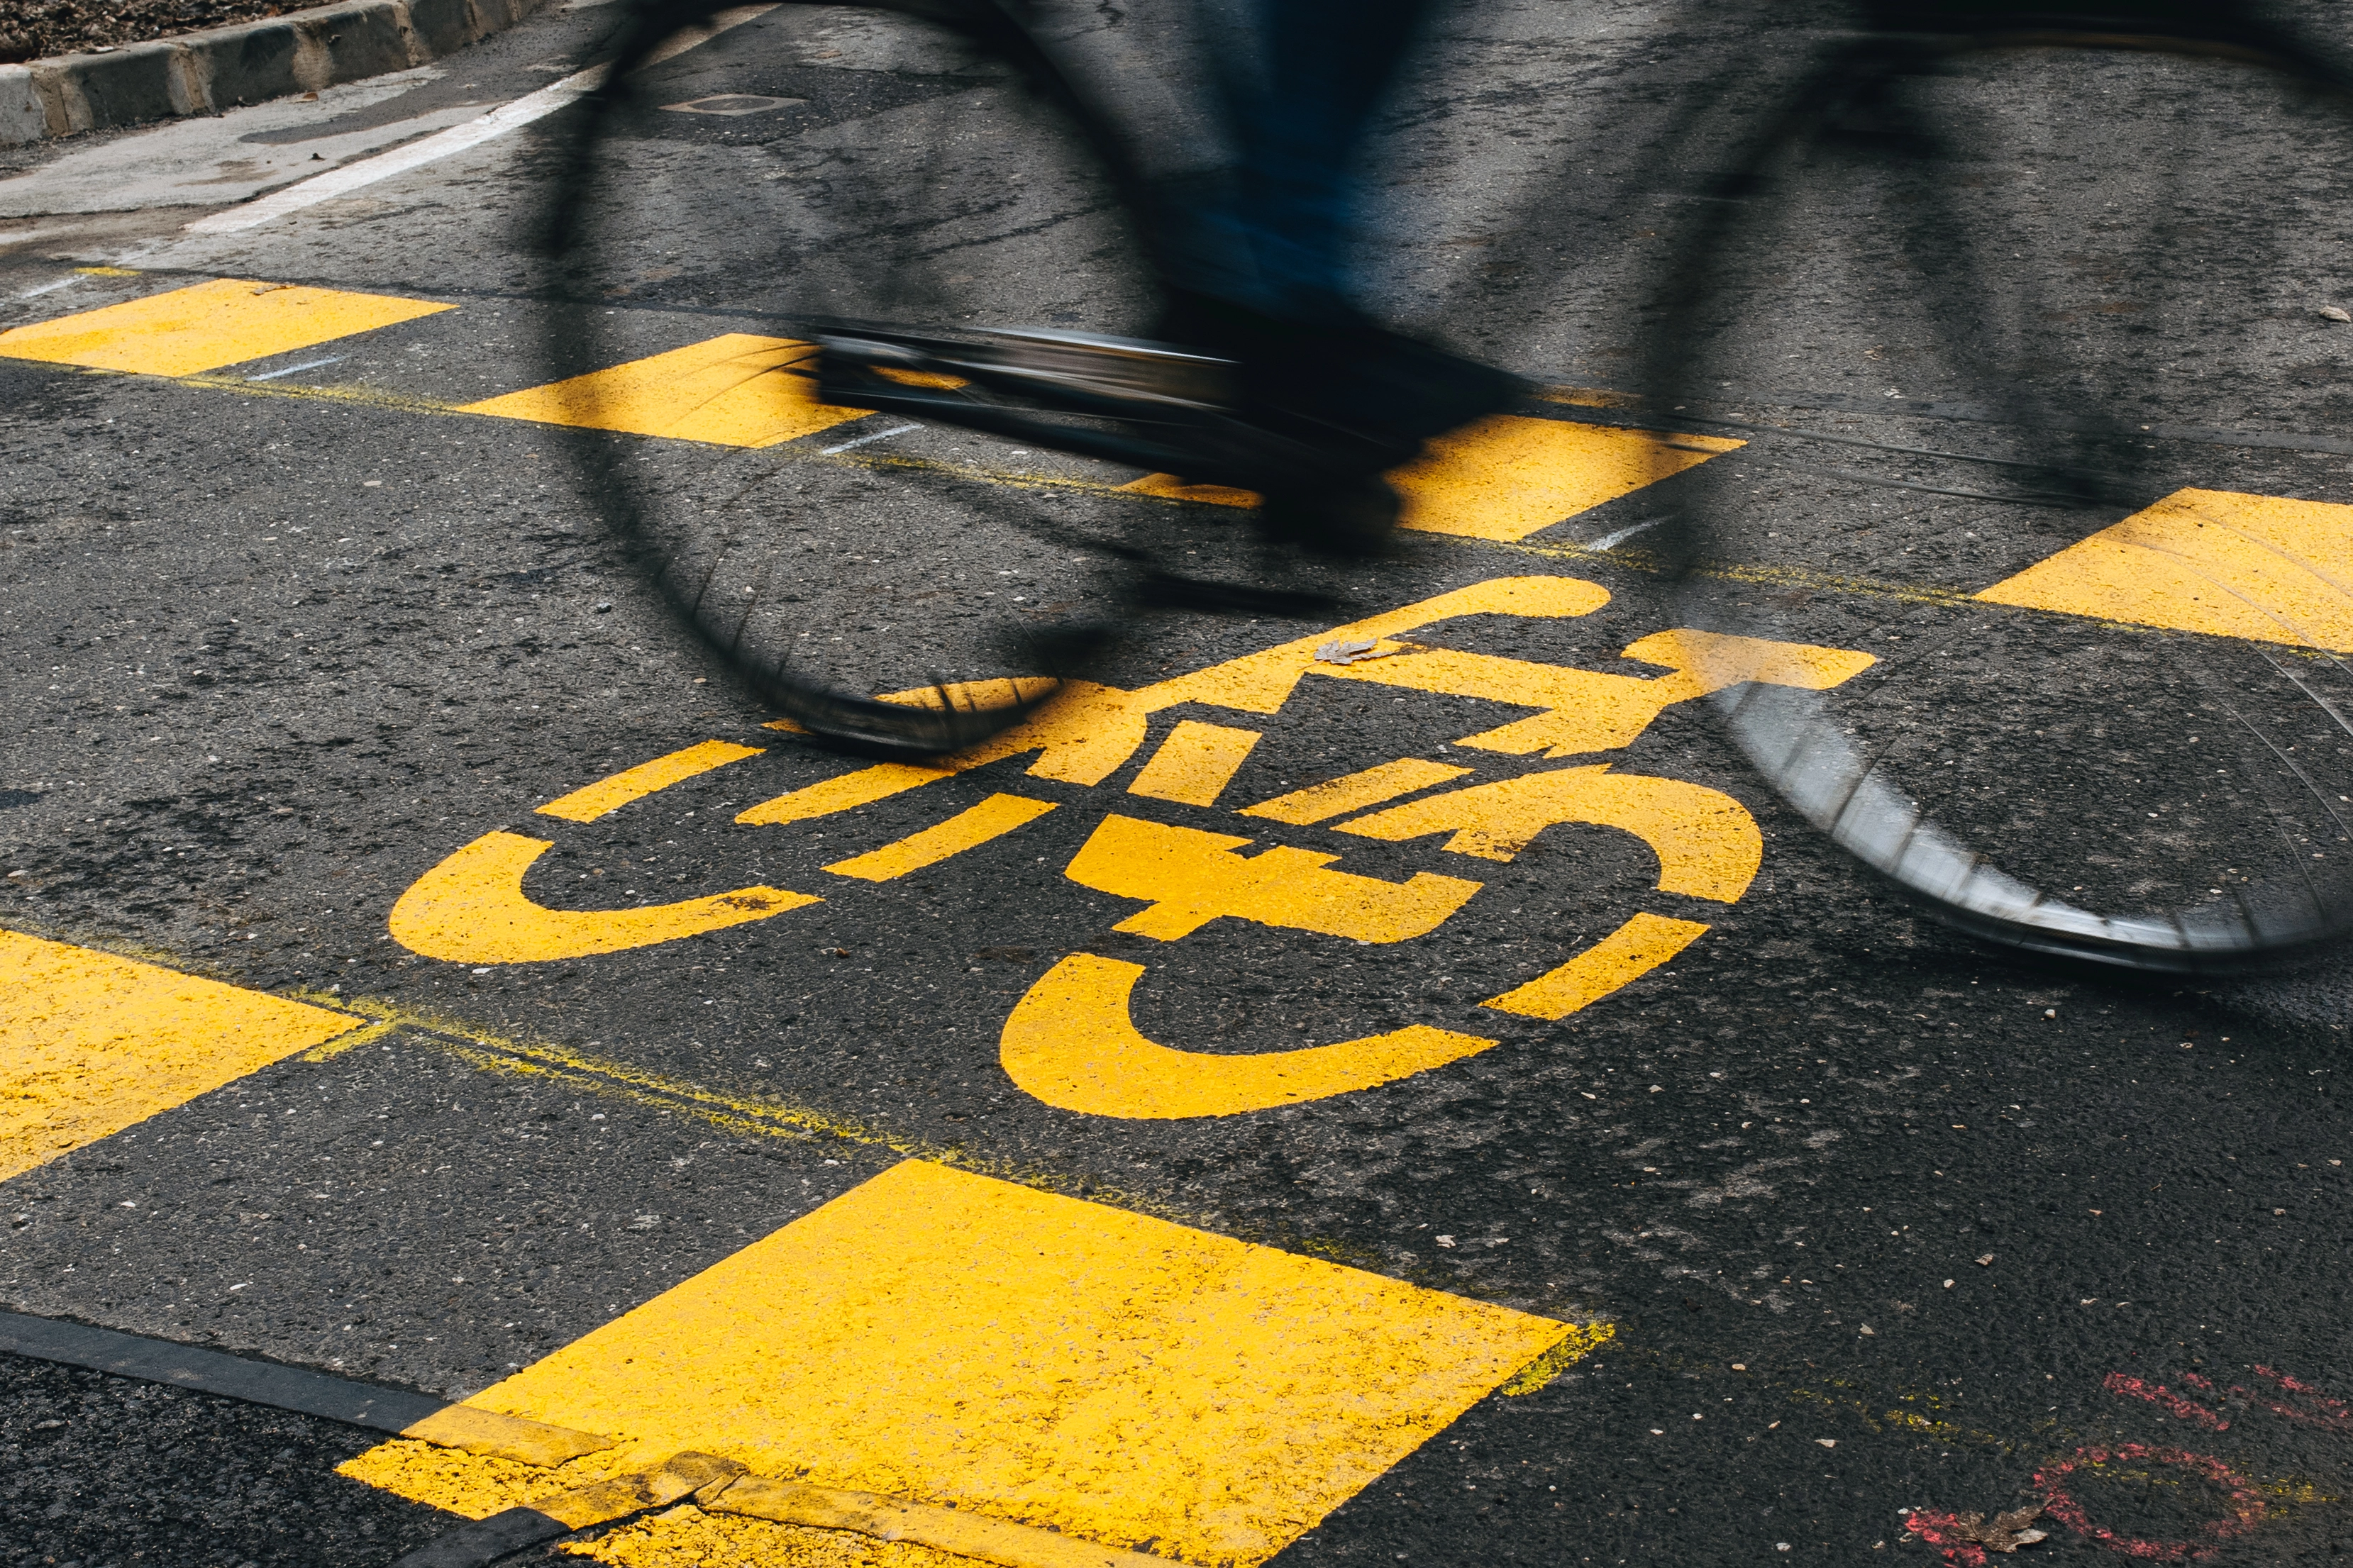 Fenntarthatóbb Baross utcai közlekedés – elkészültek a kerékpáros és forgalomcsi